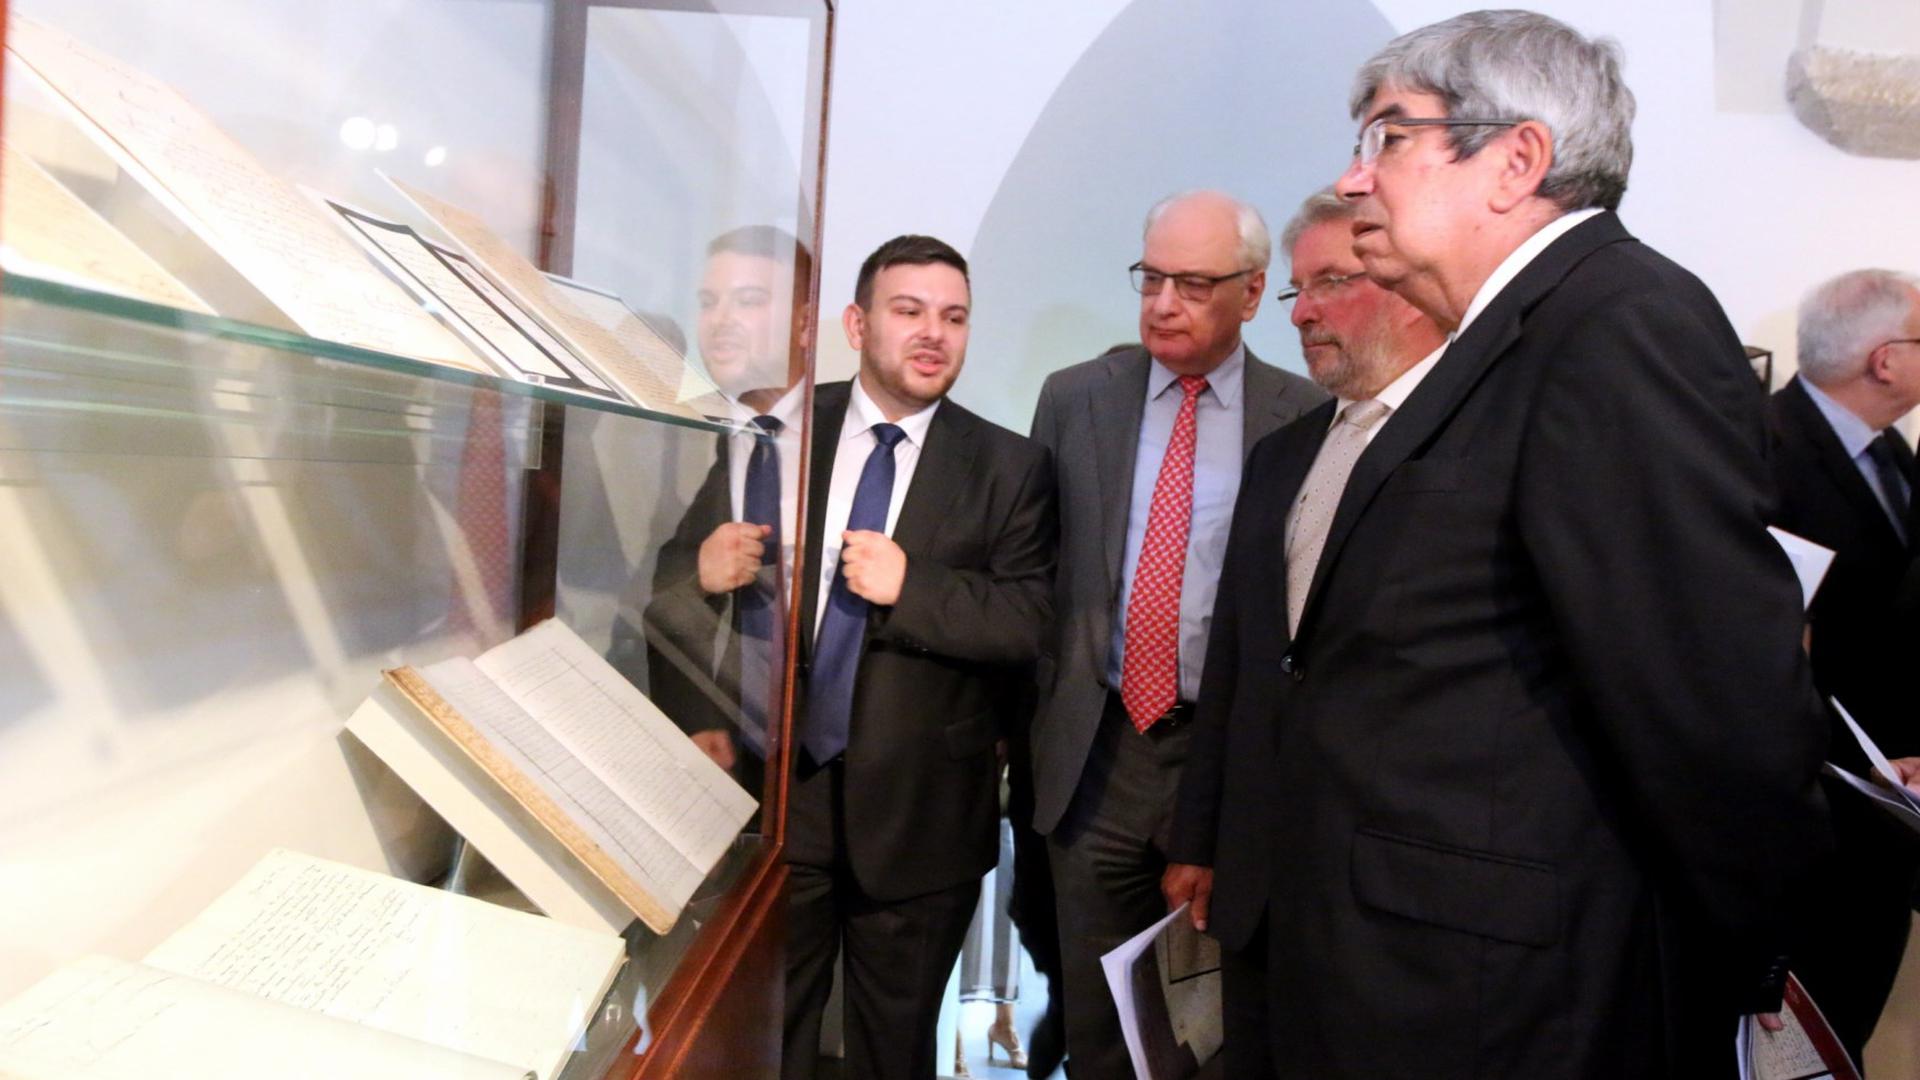 O presidente do Parlamento luxemburguês, Mars di Bartolomeo (segundo à direita), e o seu homólogo português, Eduardo Ferro Rodrigues (à direita), na inauguração da exposição, no dia 12 de Setembro.
